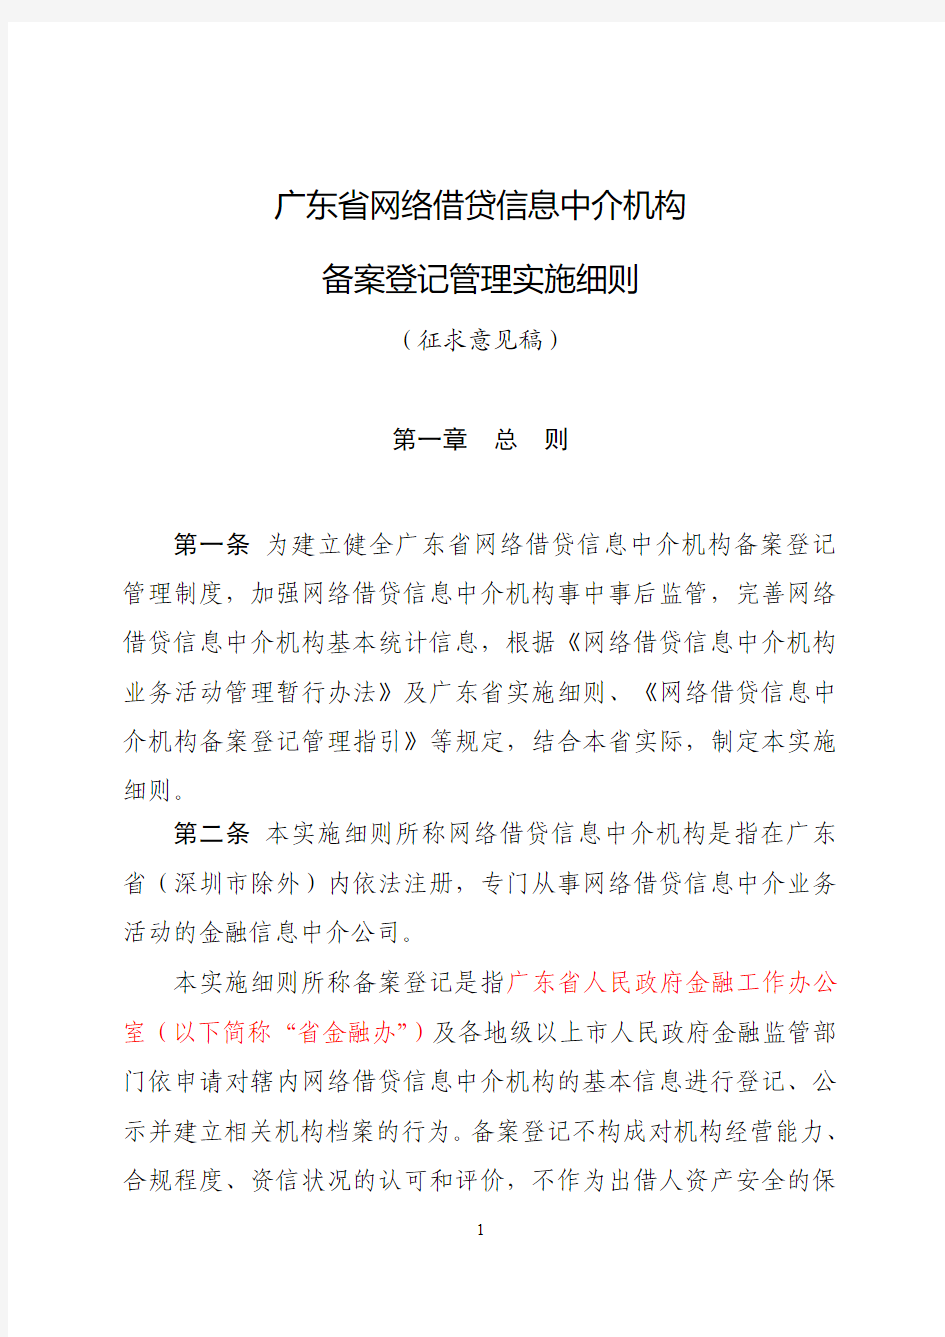 广东省网络借贷信息中介机构备案登记管理细则征求意见稿